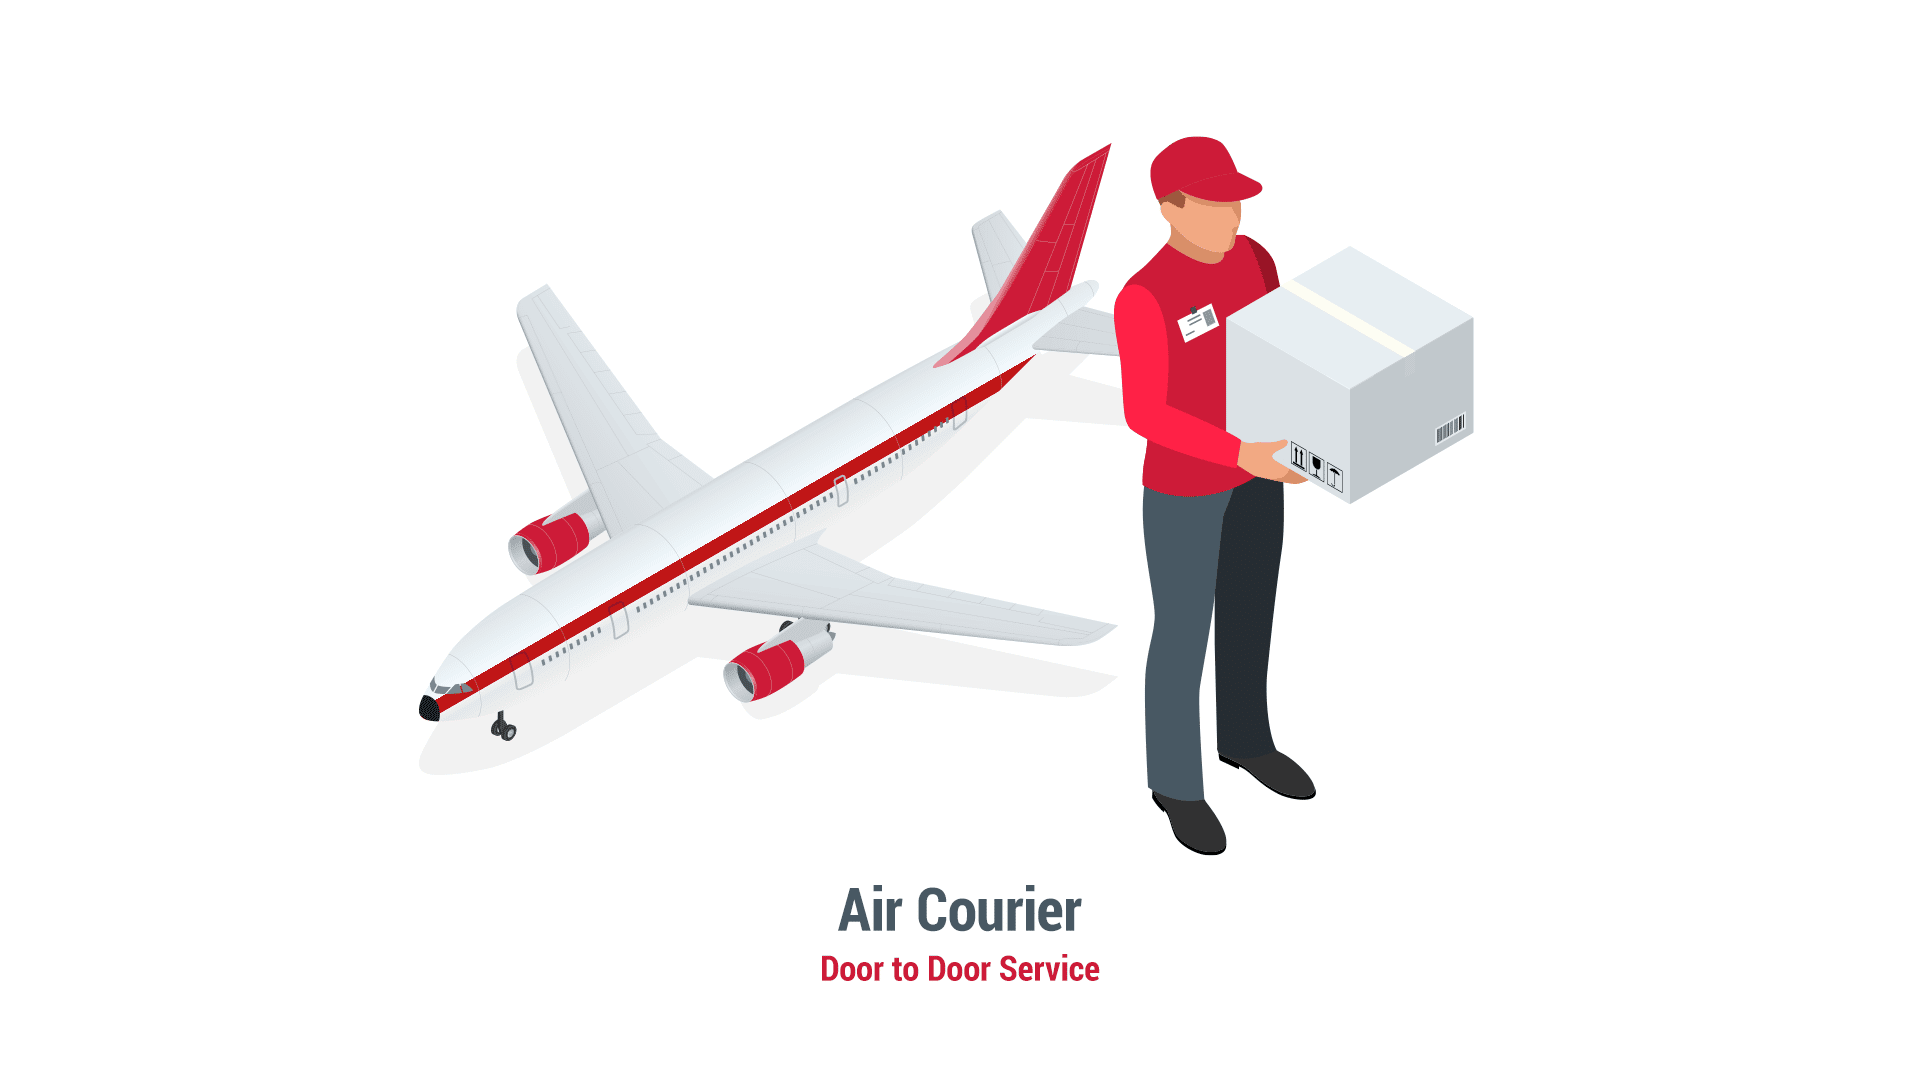 Air Courier is Door to Door Service